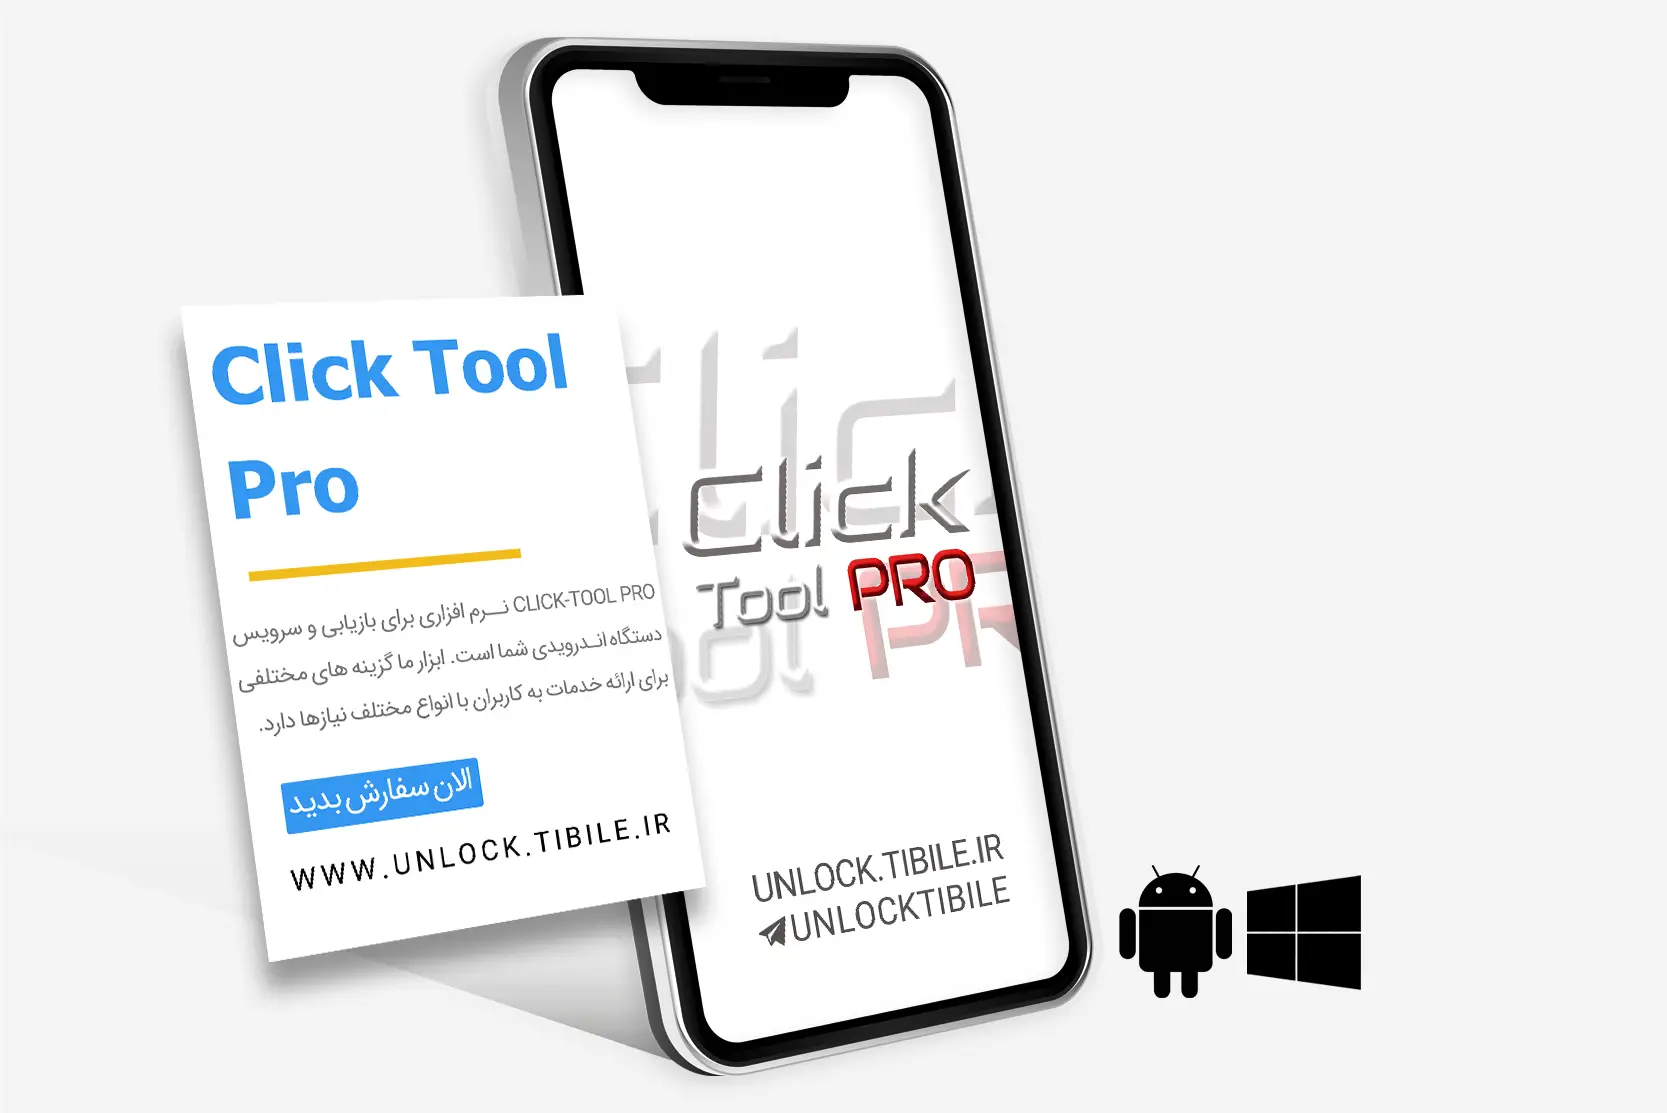 Click Tool Pro